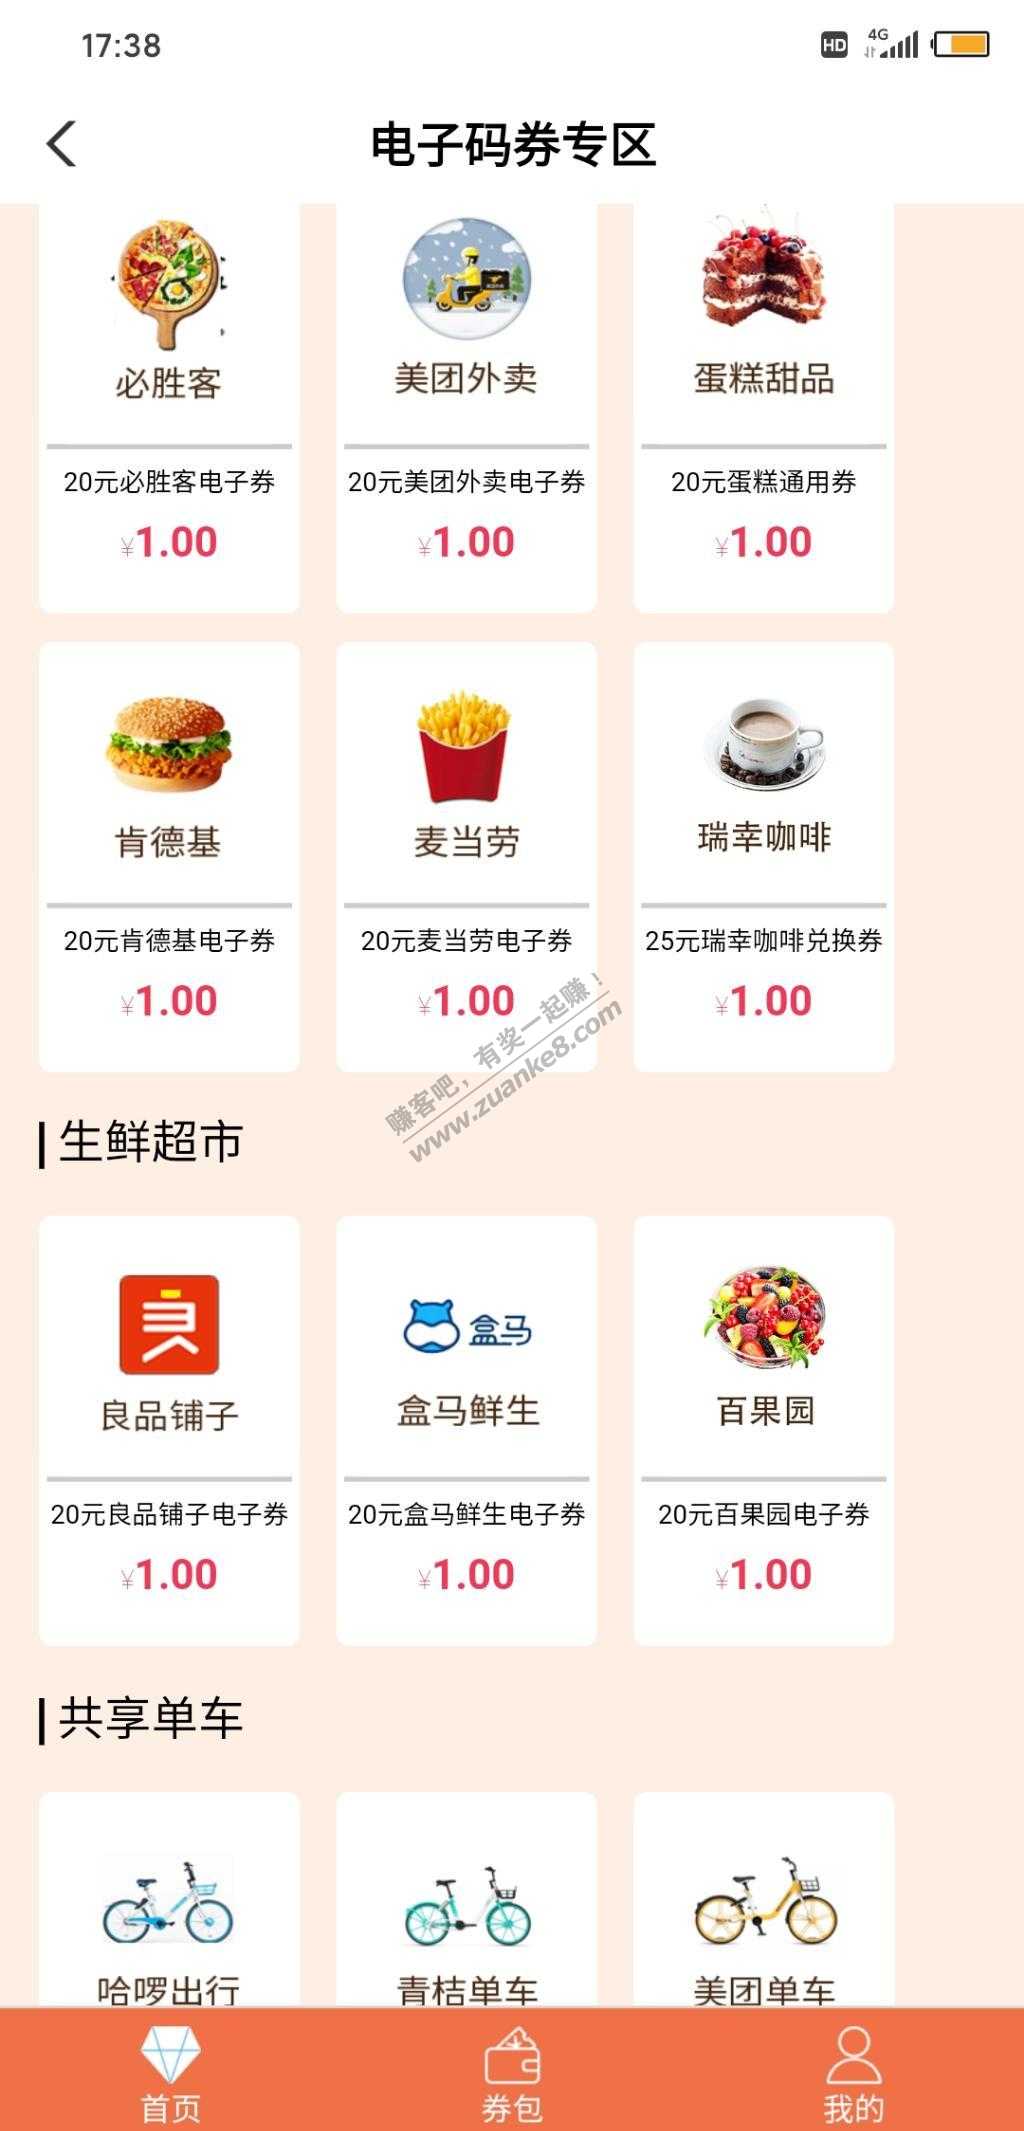 陕西农行用户可以1元购买20元代金券-惠小助(52huixz.com)